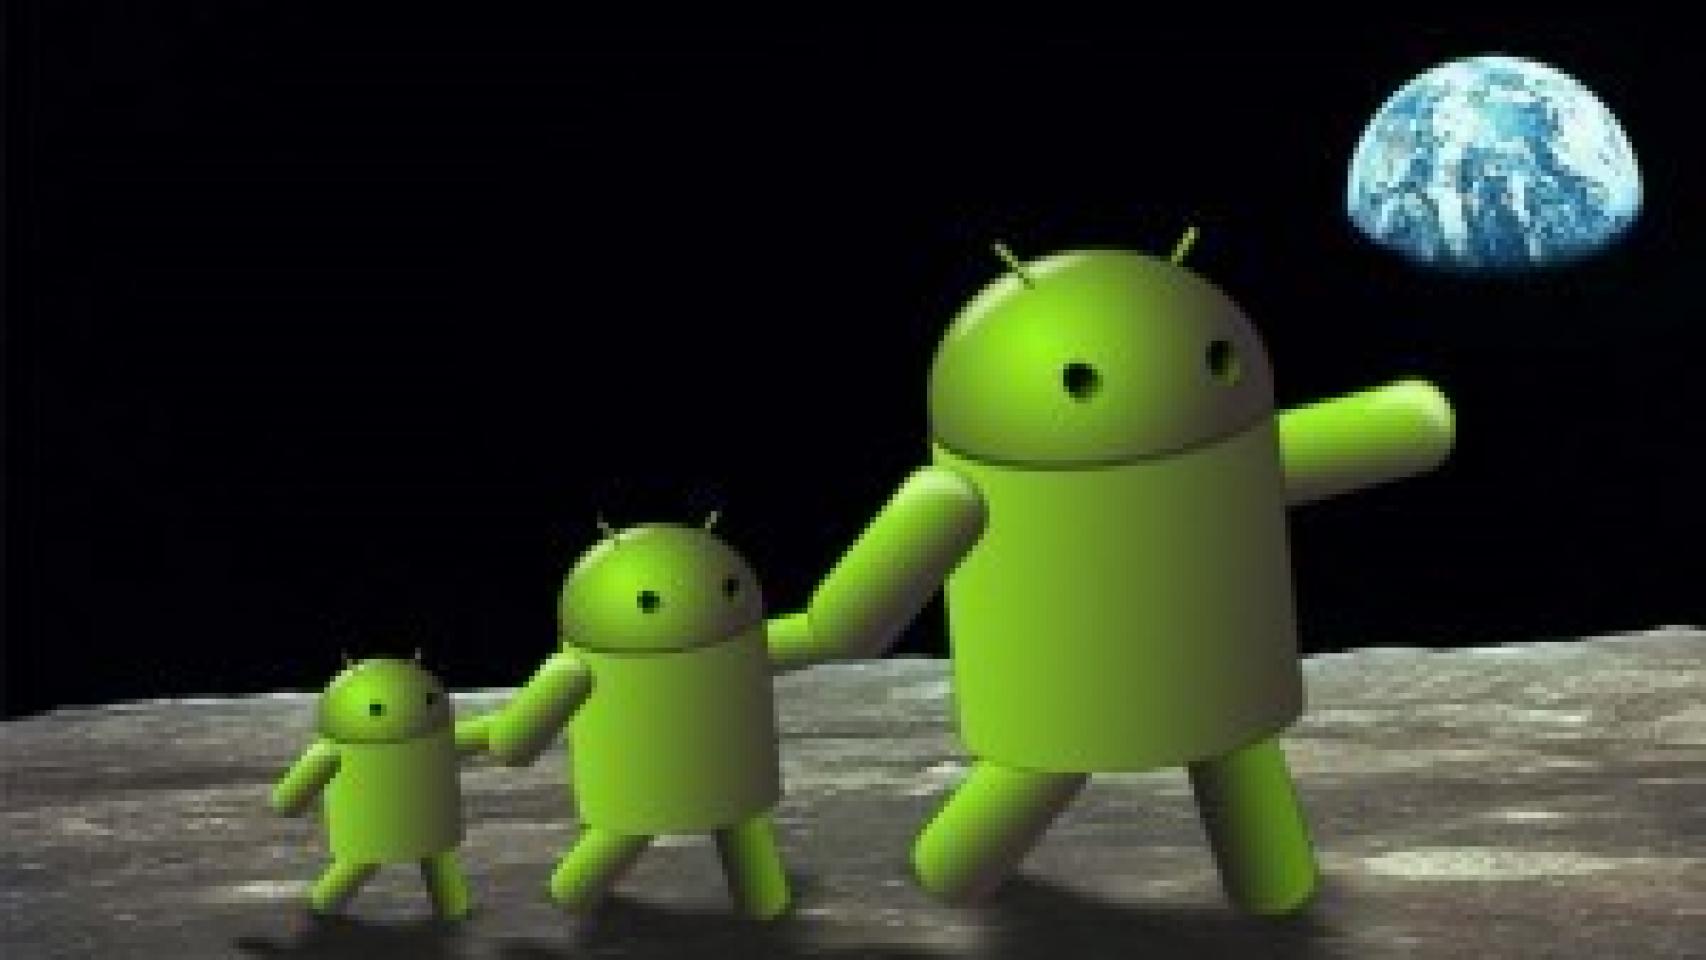 La Segunda Generación android: Galaxy S, HTC Evo, Lephone y Desire